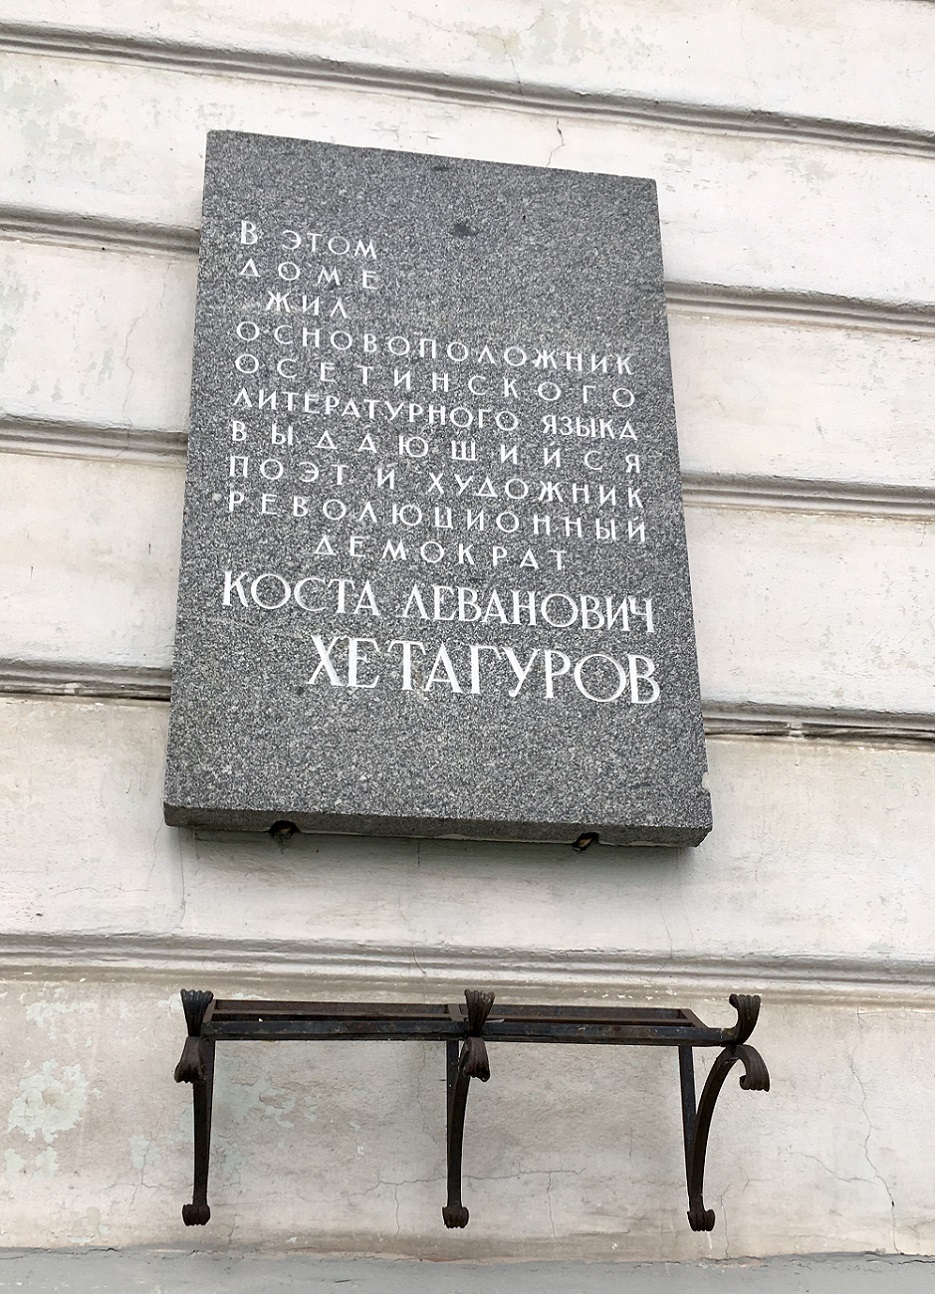 Saint Petersburg, Миллионная улица, 18. Saint Petersburg — Memorial plaques